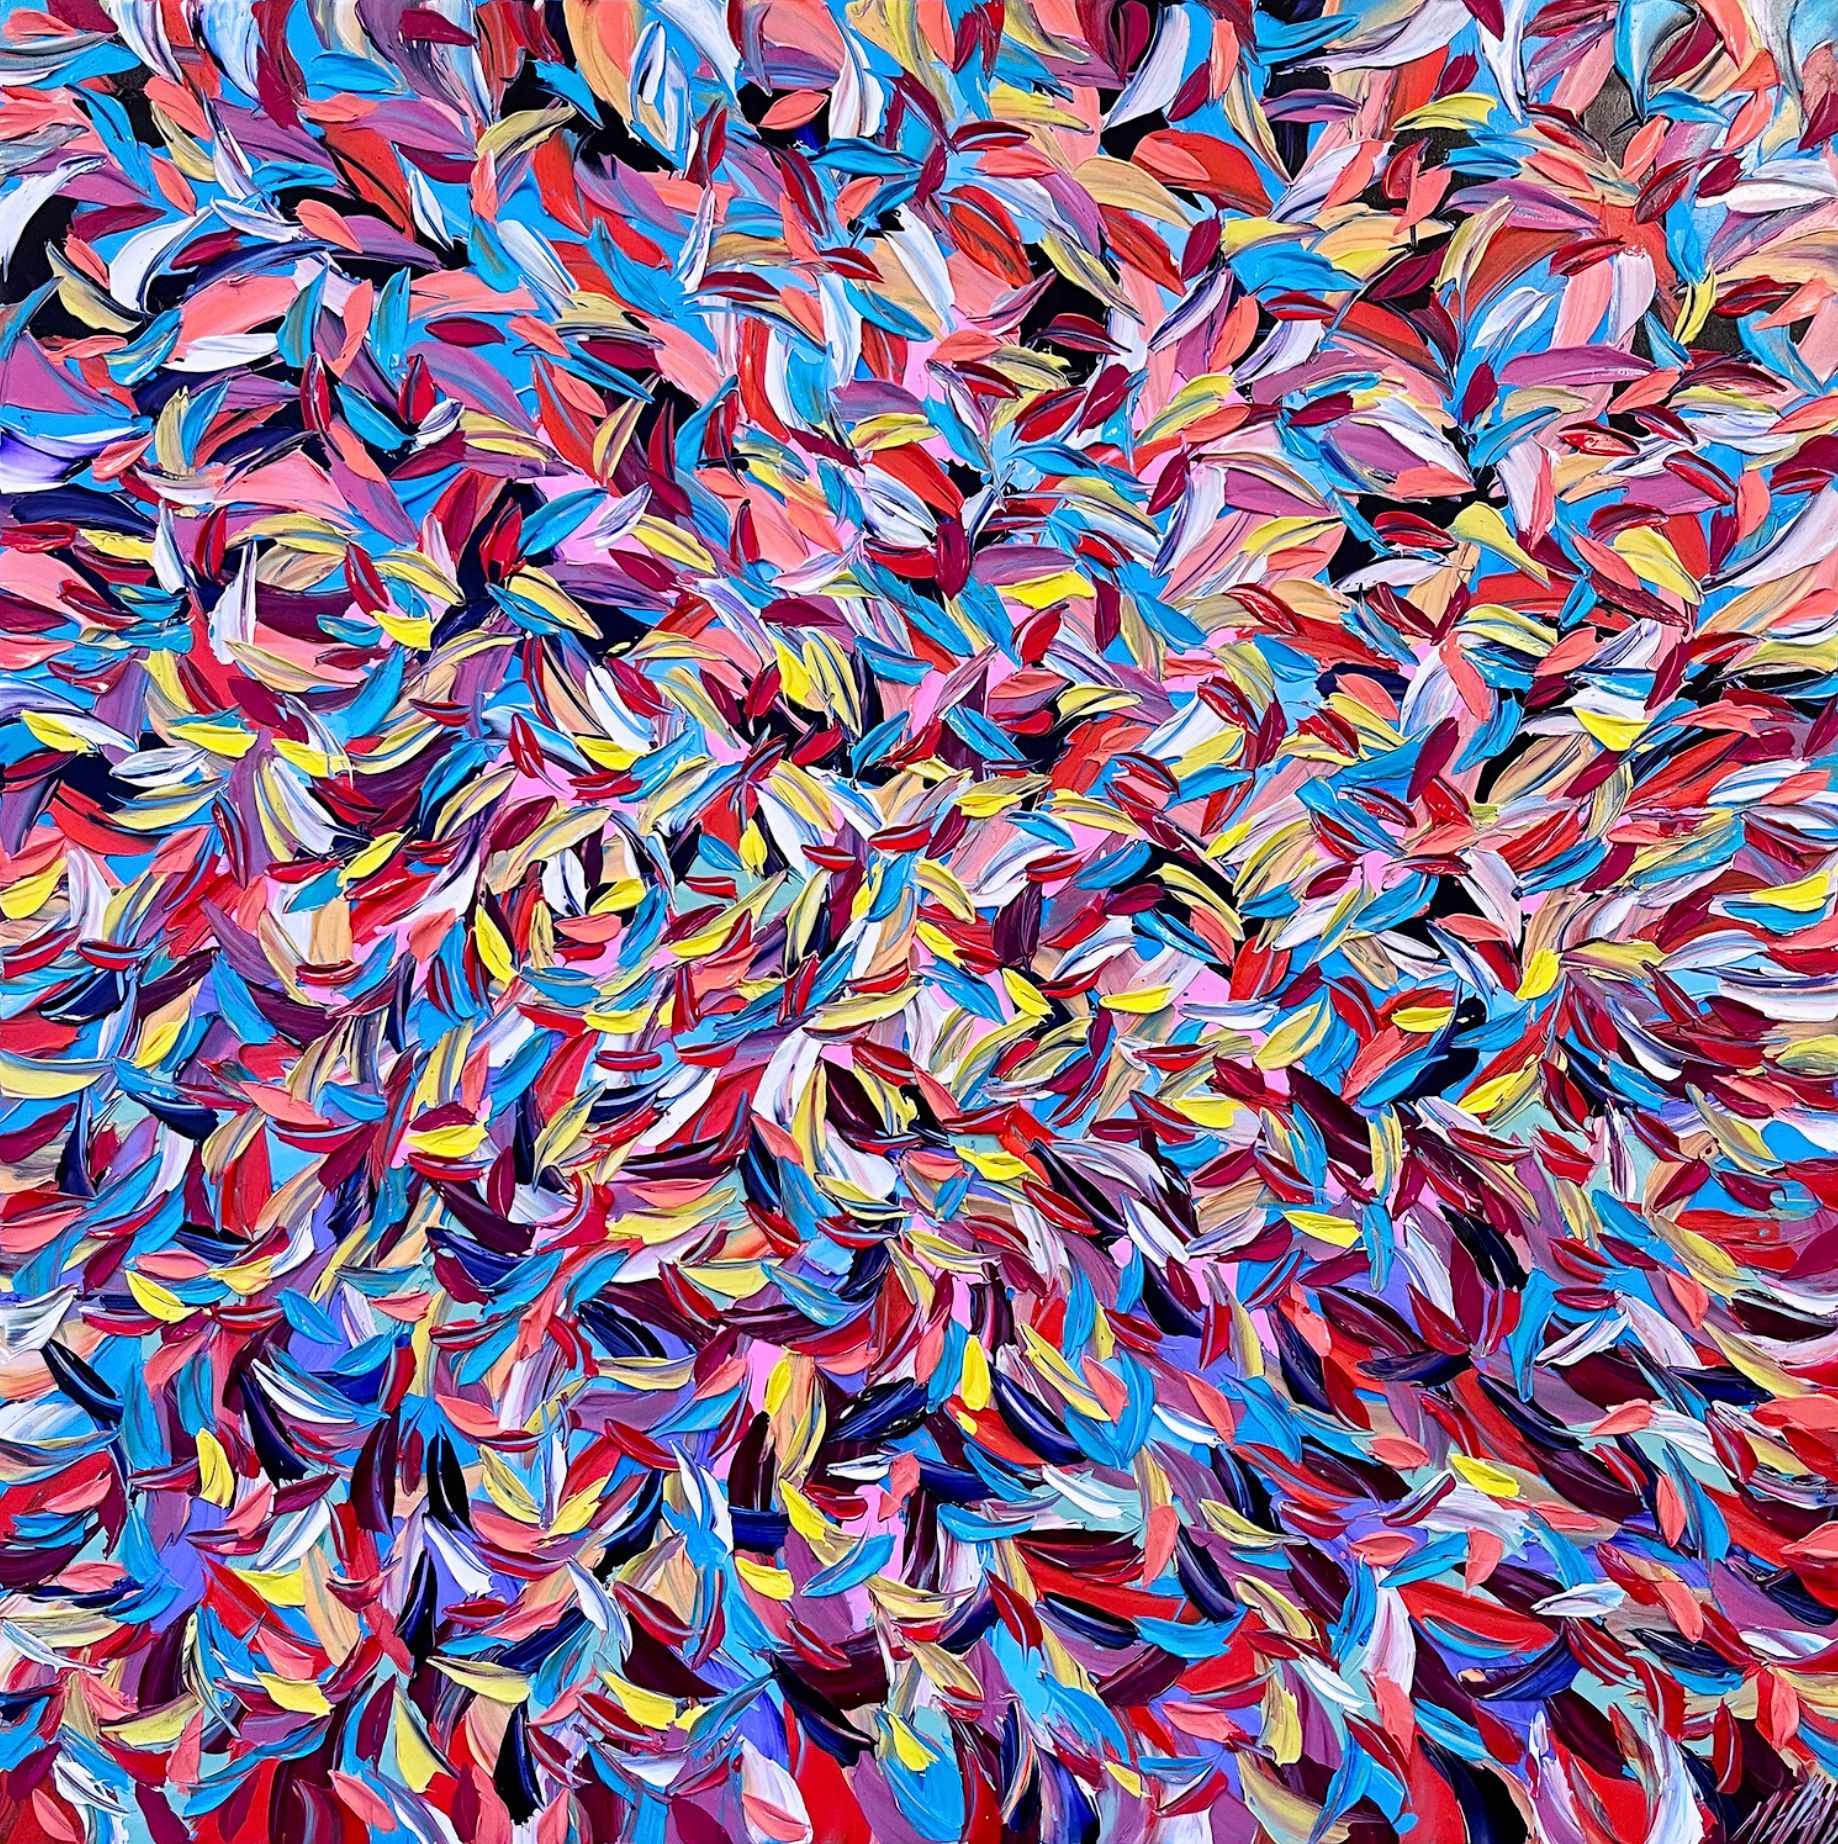 Oliver Messas "Vitalité..." Les peintures abstraites et colorées ressemblent à des feuilles